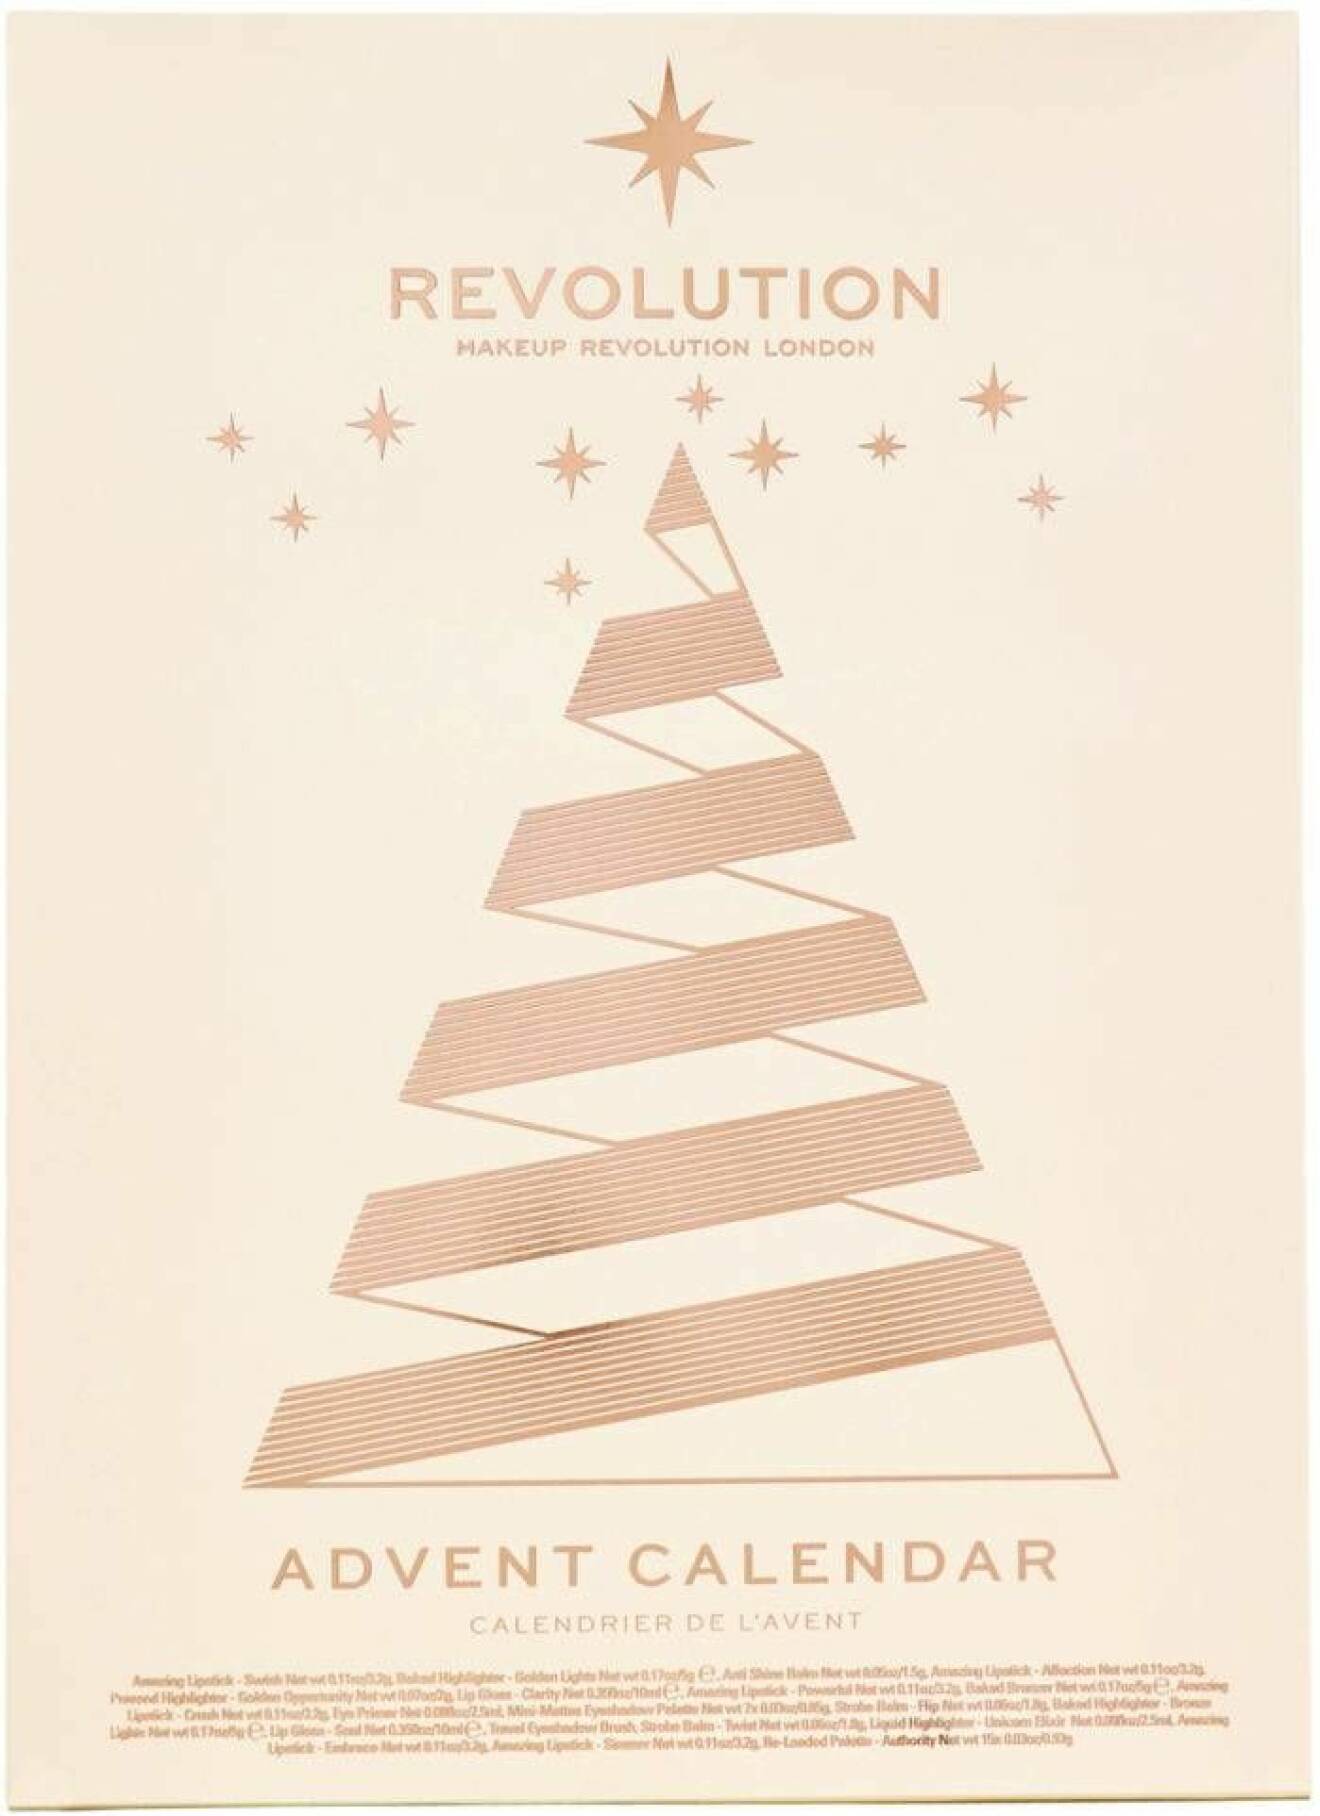 Revolutions adventskalender 2018